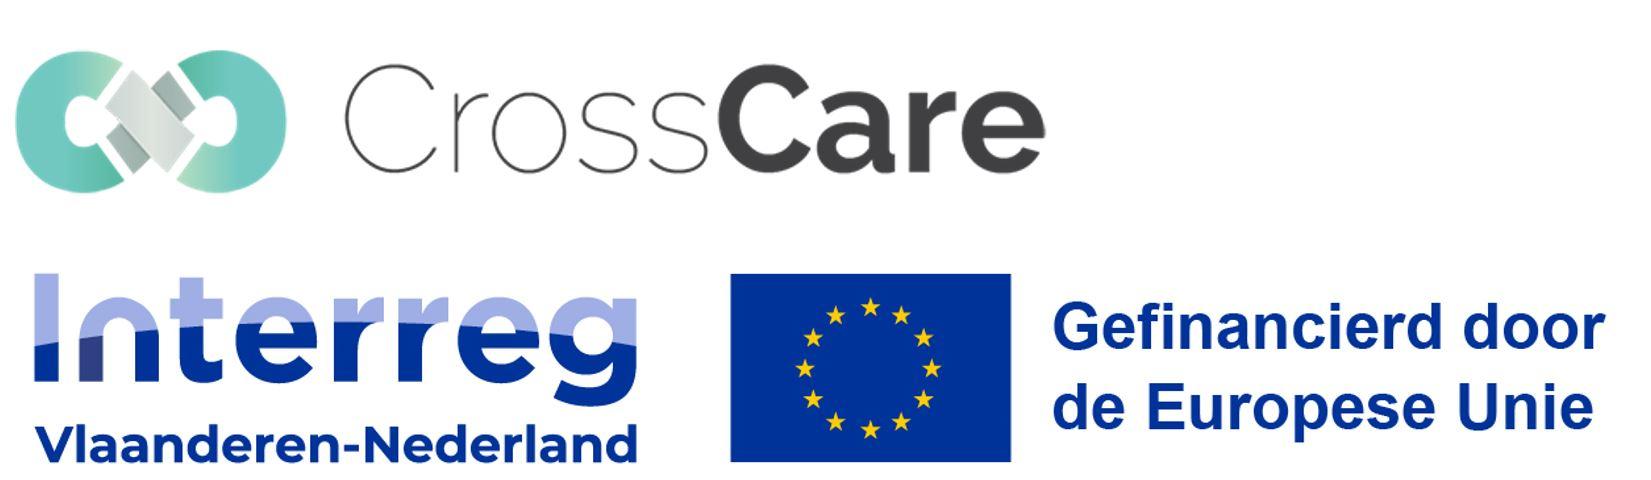 Logo: CrossCare & Interreg Vlaanderen-Nederland, gefinancierd door de Europese Unie